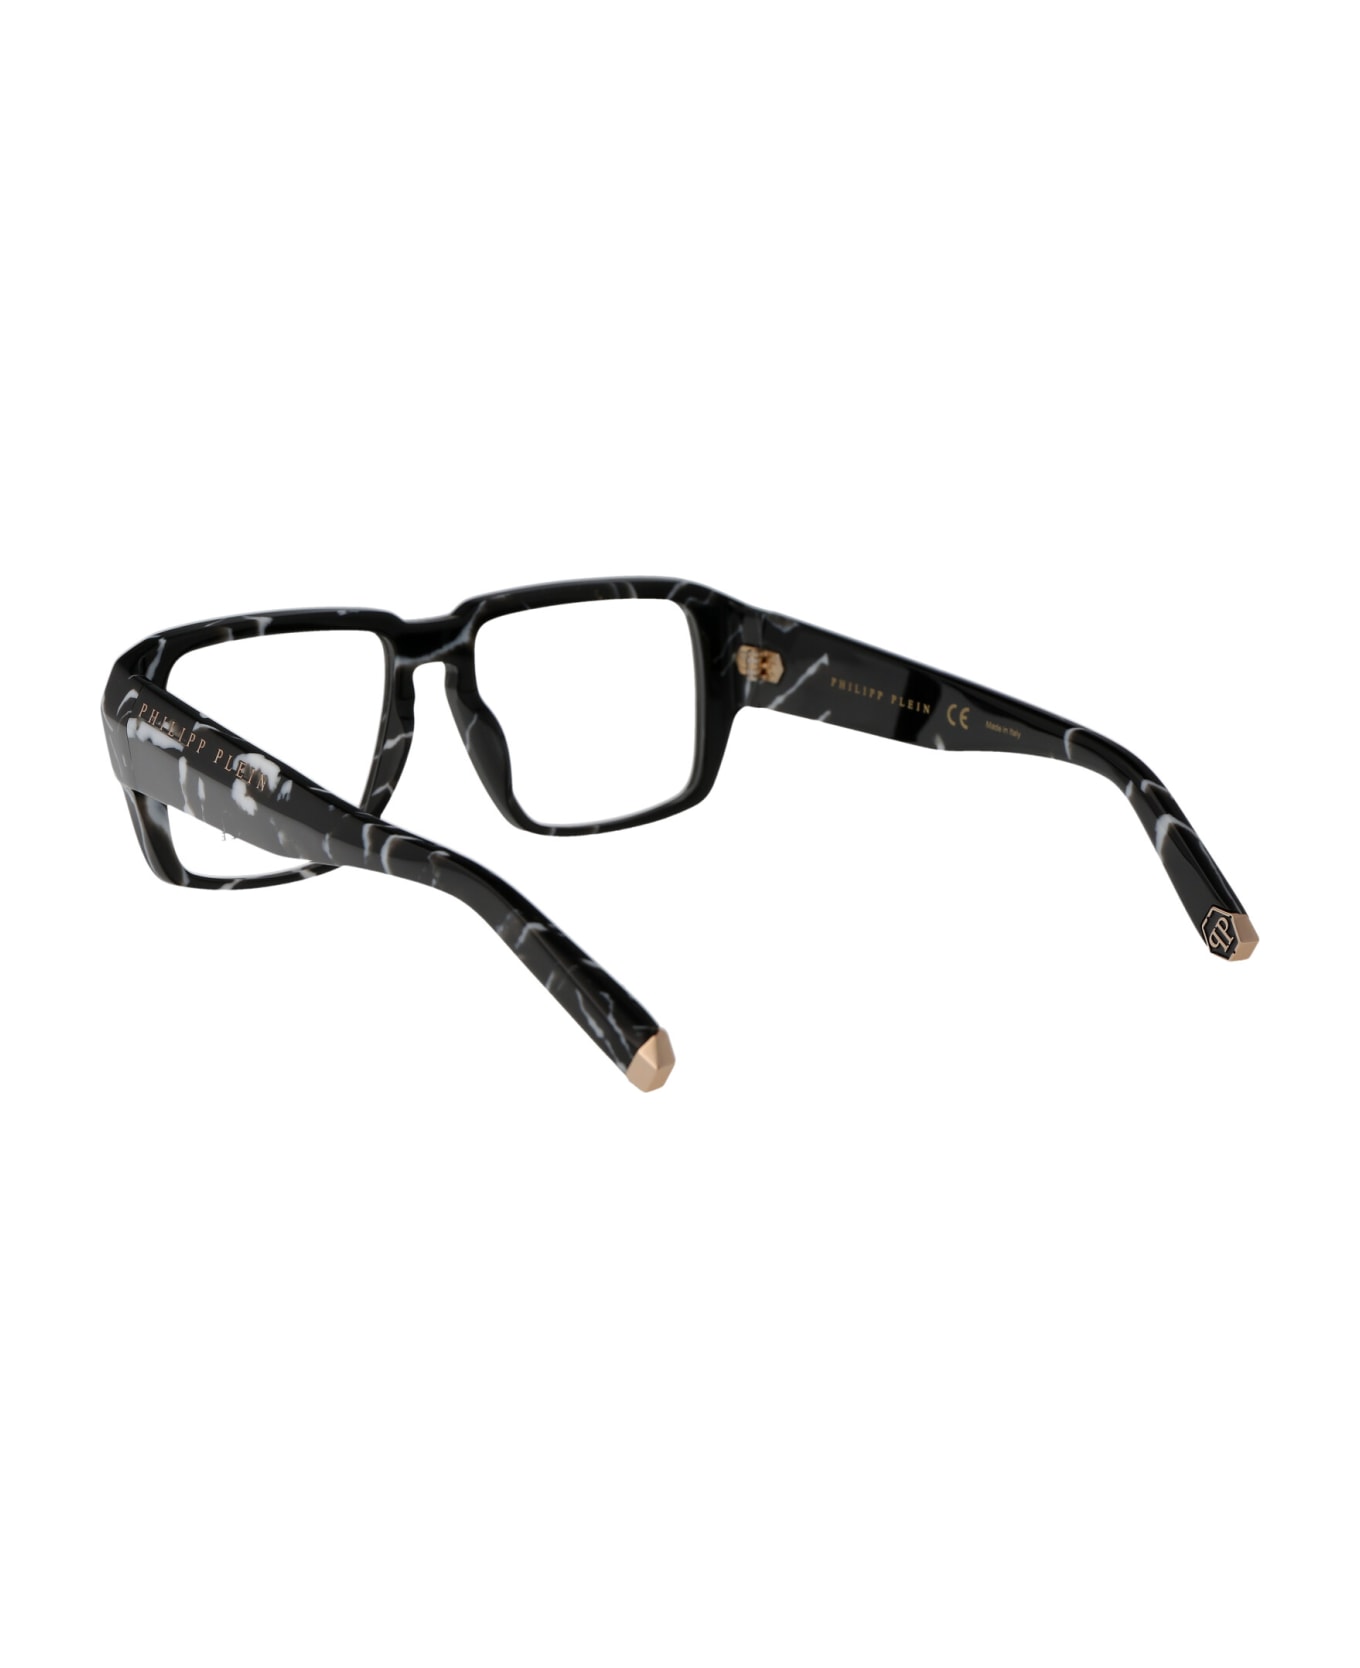 Philipp Plein Vpp081 Glasses - 0Z21 NERO MARMORIZZATO